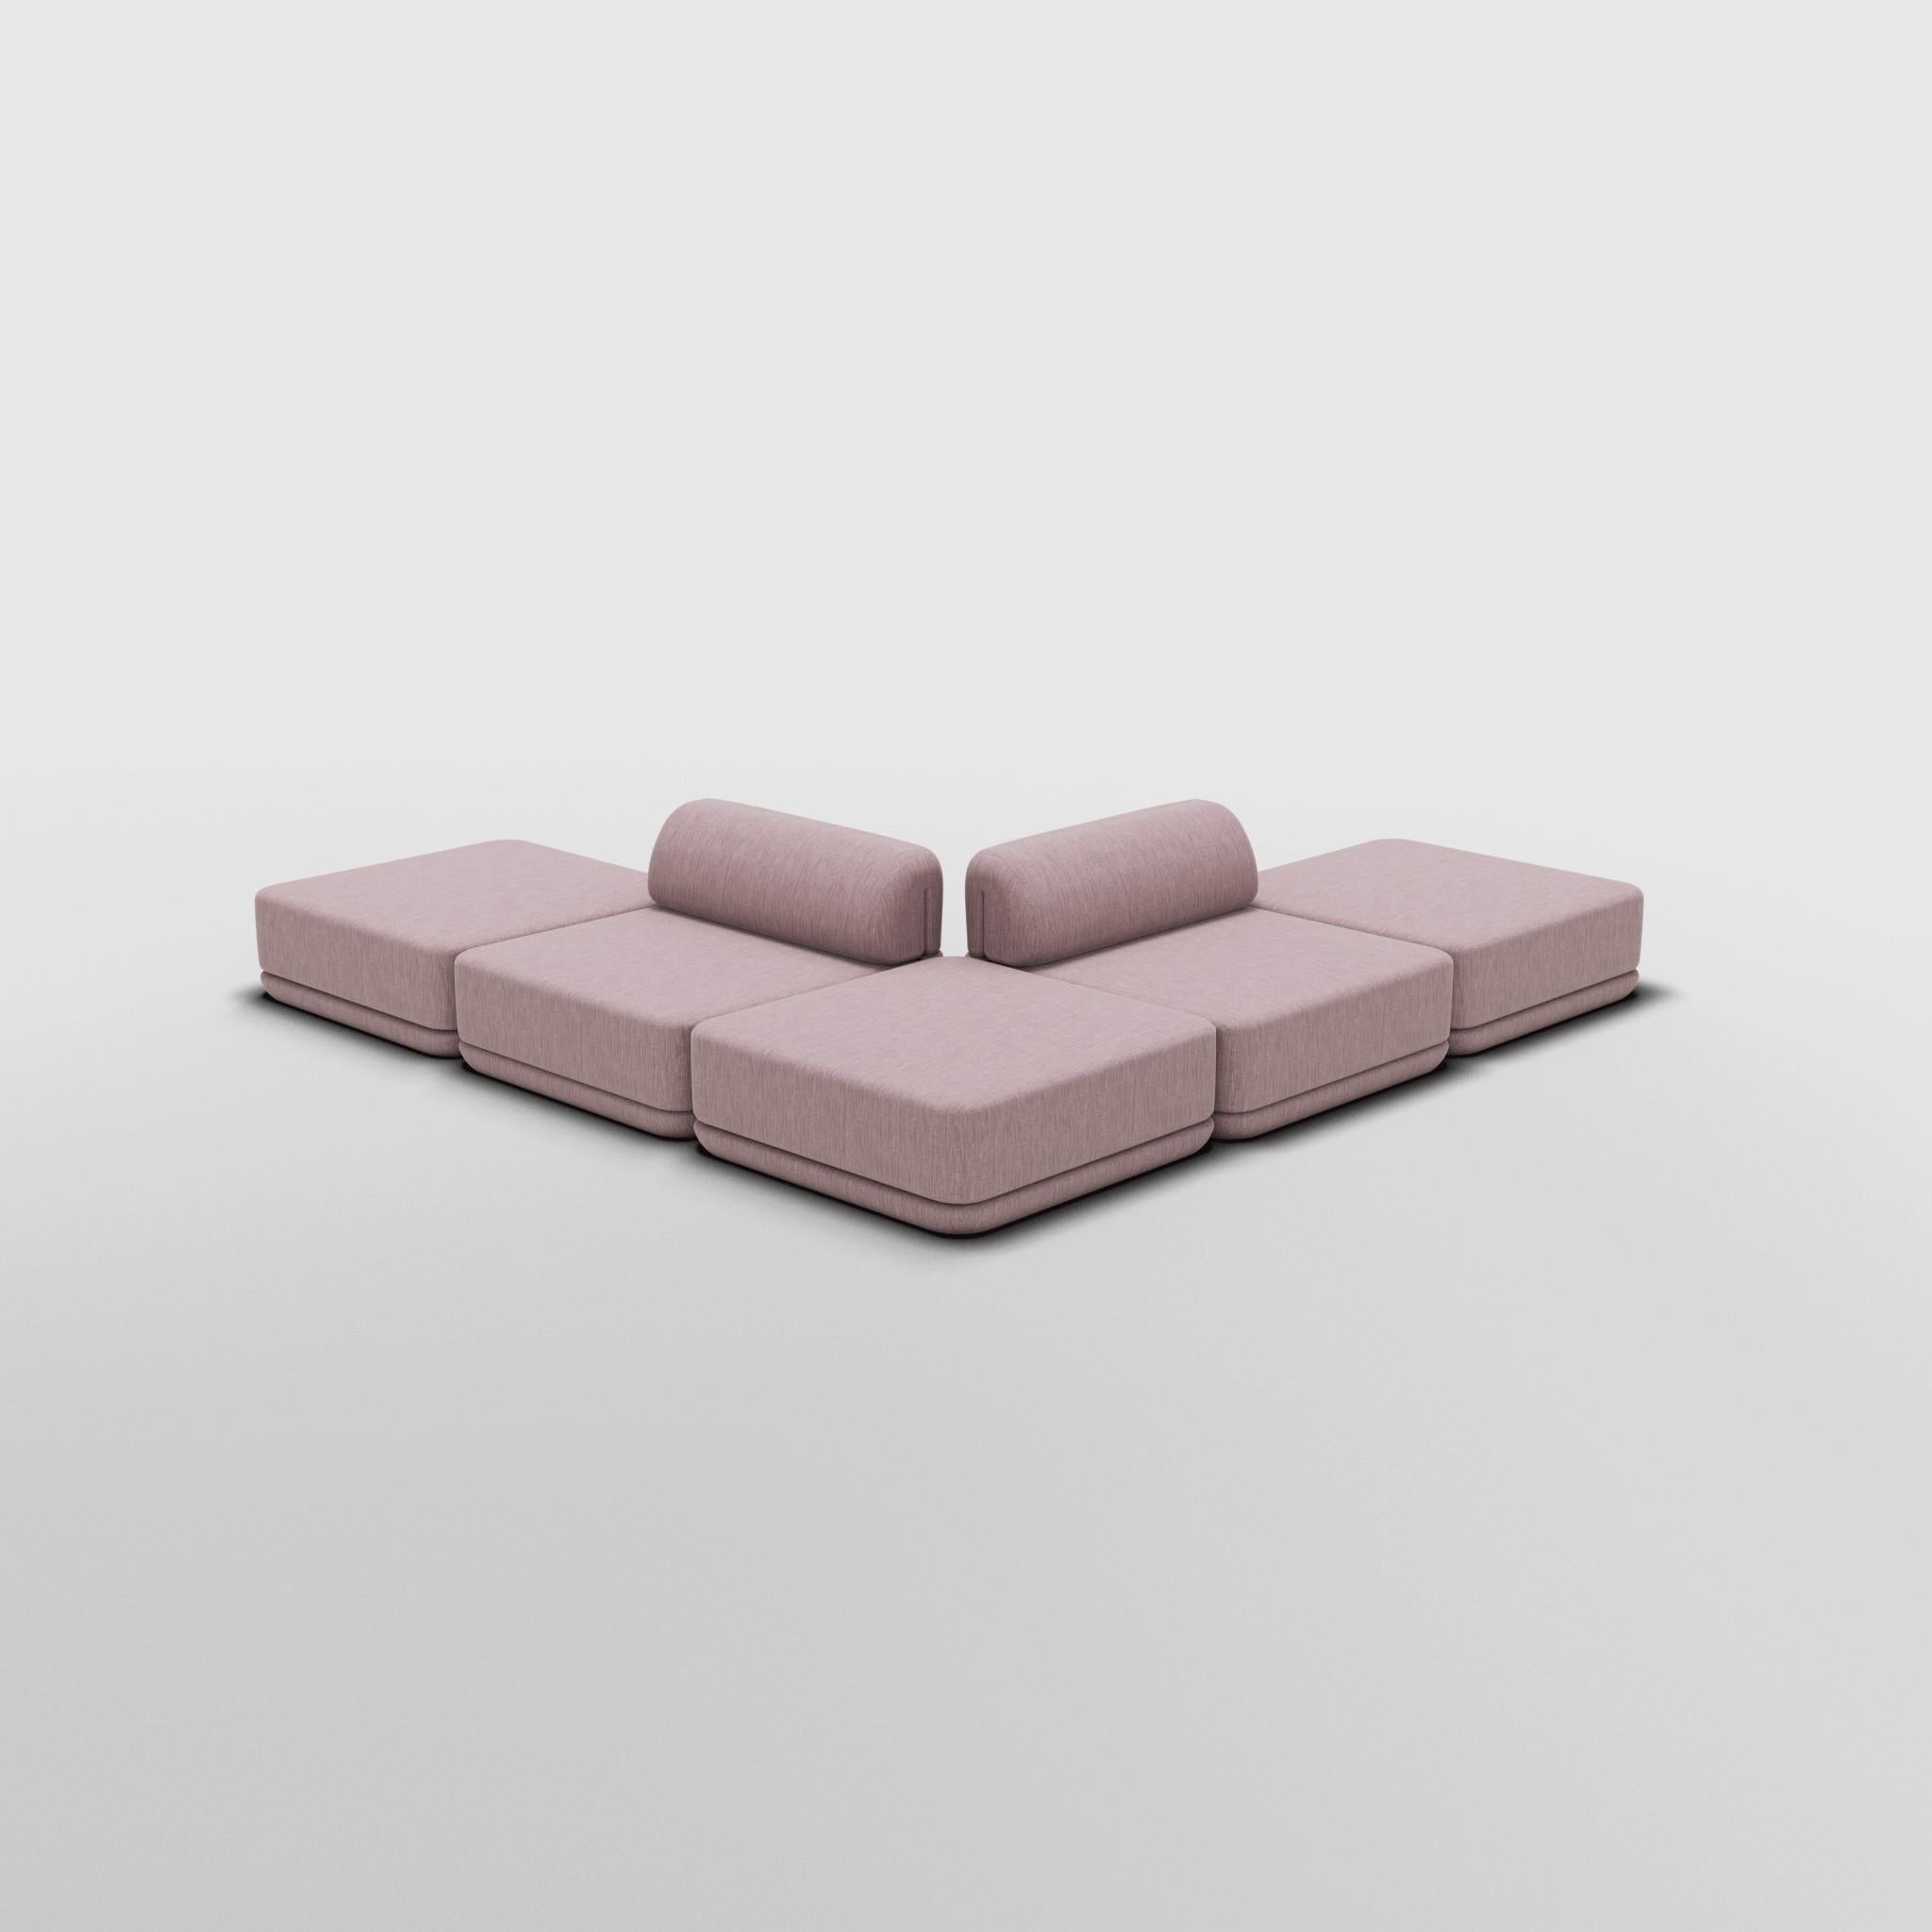 Ottoman Mix Sectional - Inspiré par les meubles de luxe italiens des années 70

Découvrez le canapé Cube, où l'art rencontre l'adaptabilité. Son design sculptural et son confort personnalisable créent des possibilités infinies pour votre espace de